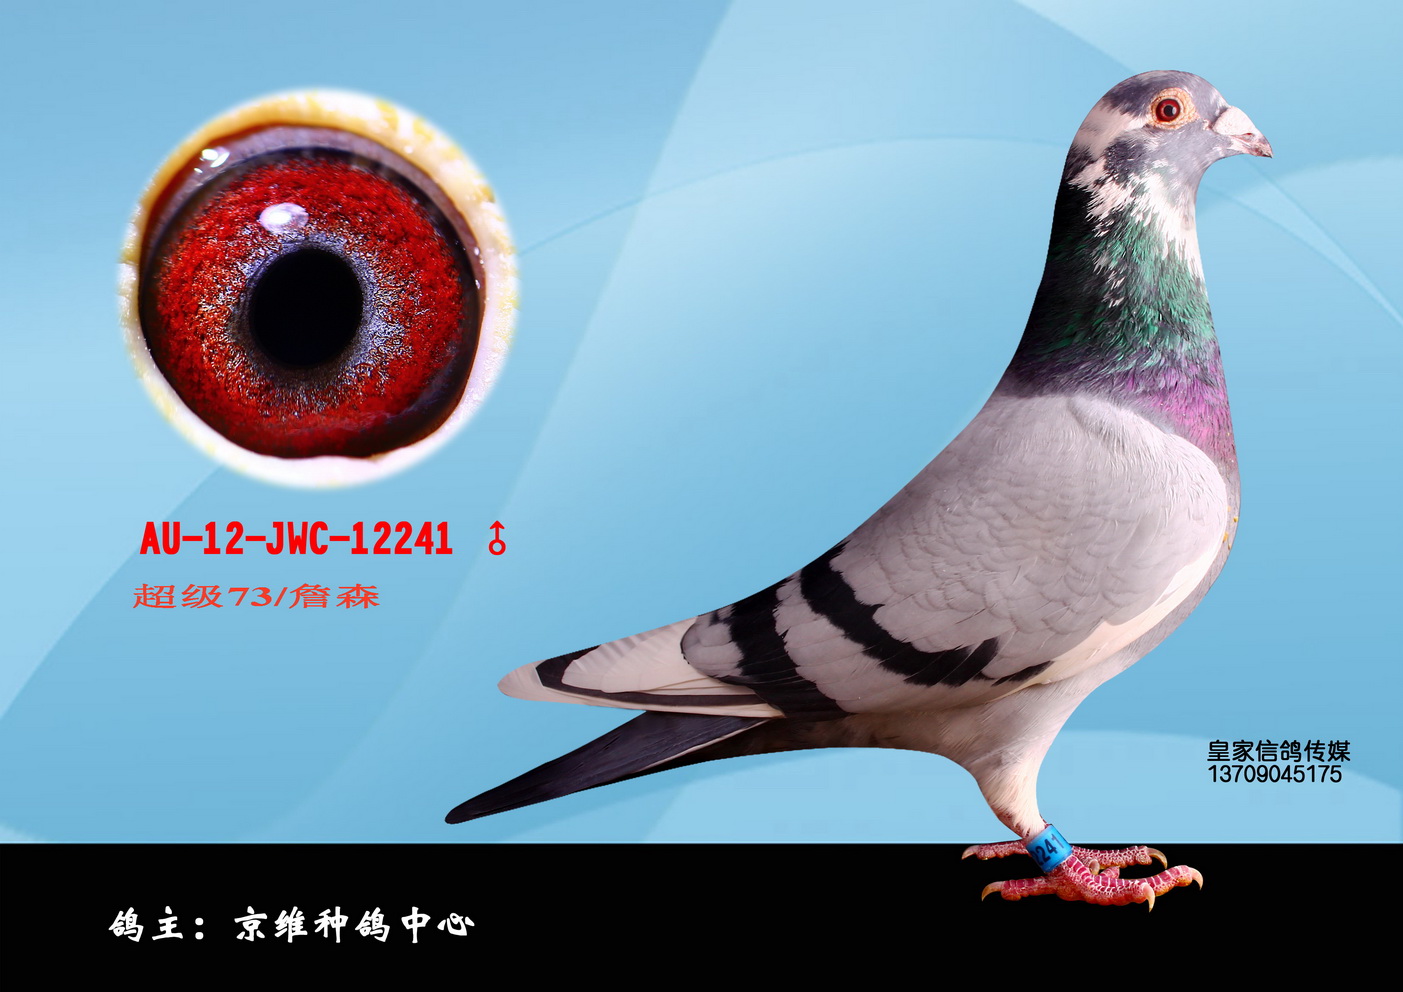 1500 元 拍卖状态 拍卖结束 商家名称 北京京维种鸽养殖